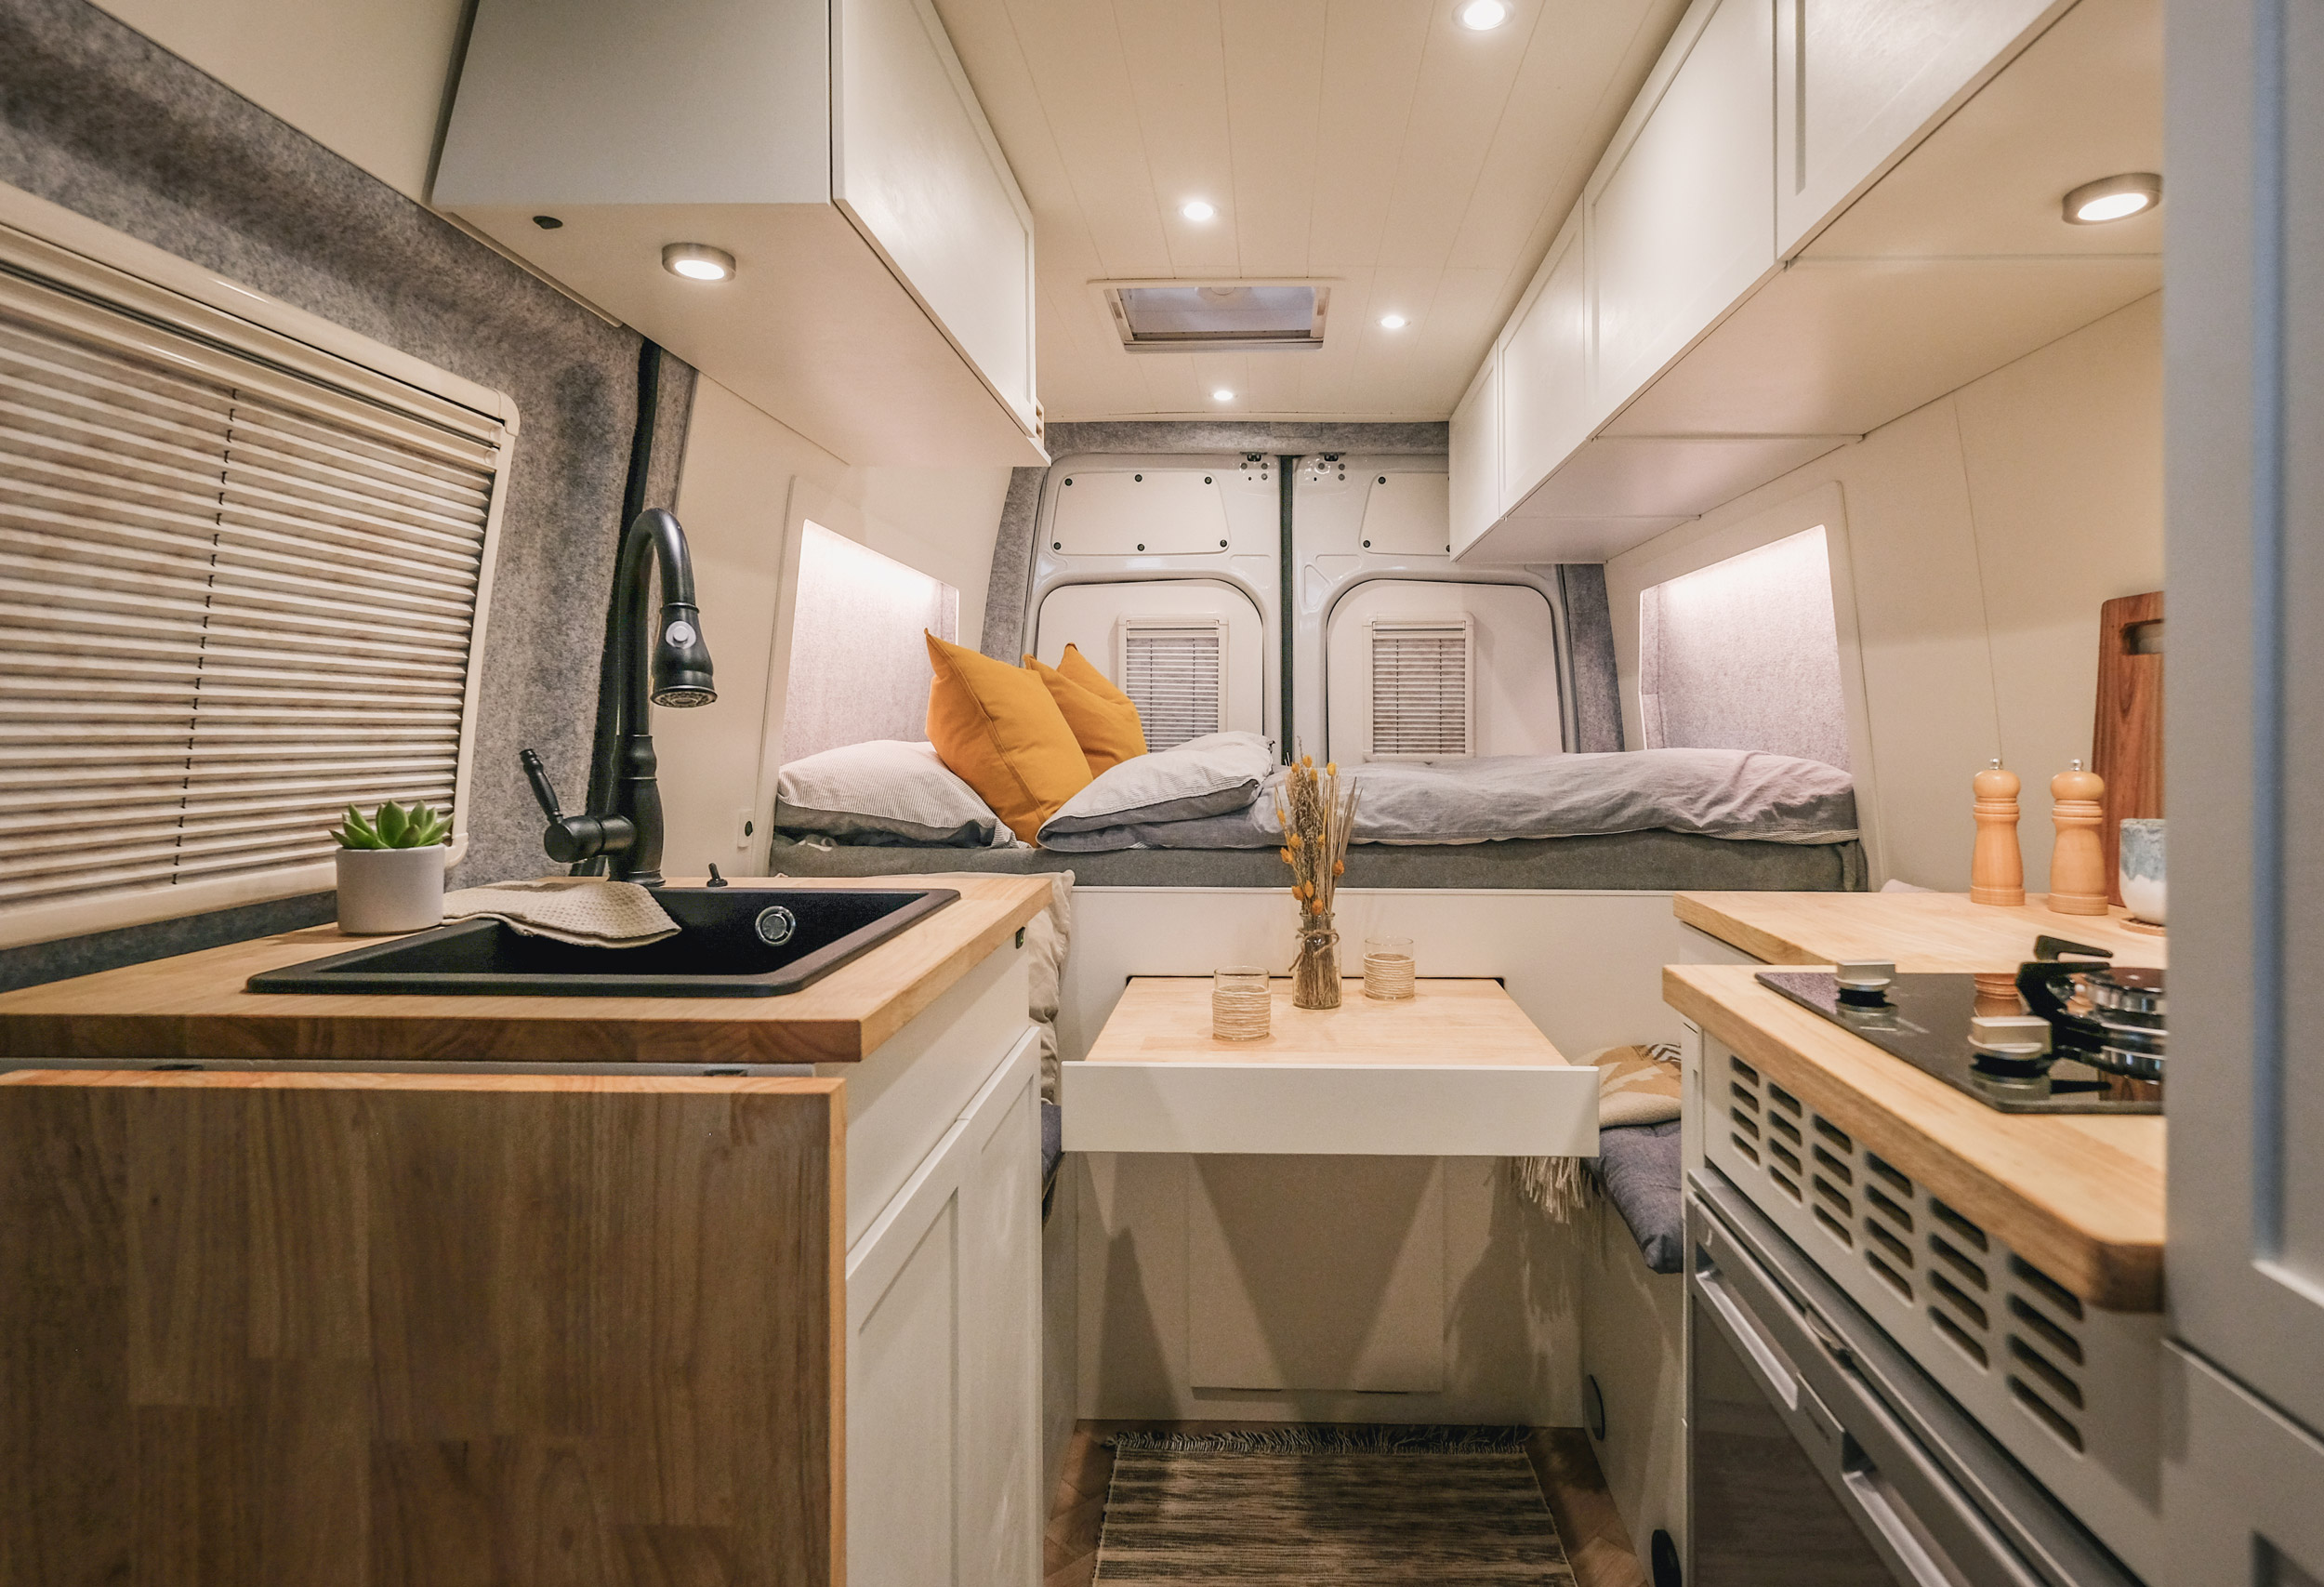 Mercedes Sprinter L2H2: Moderner, heller Camperausbau mit festem Bett, Sitzecke und großzügiger Küche